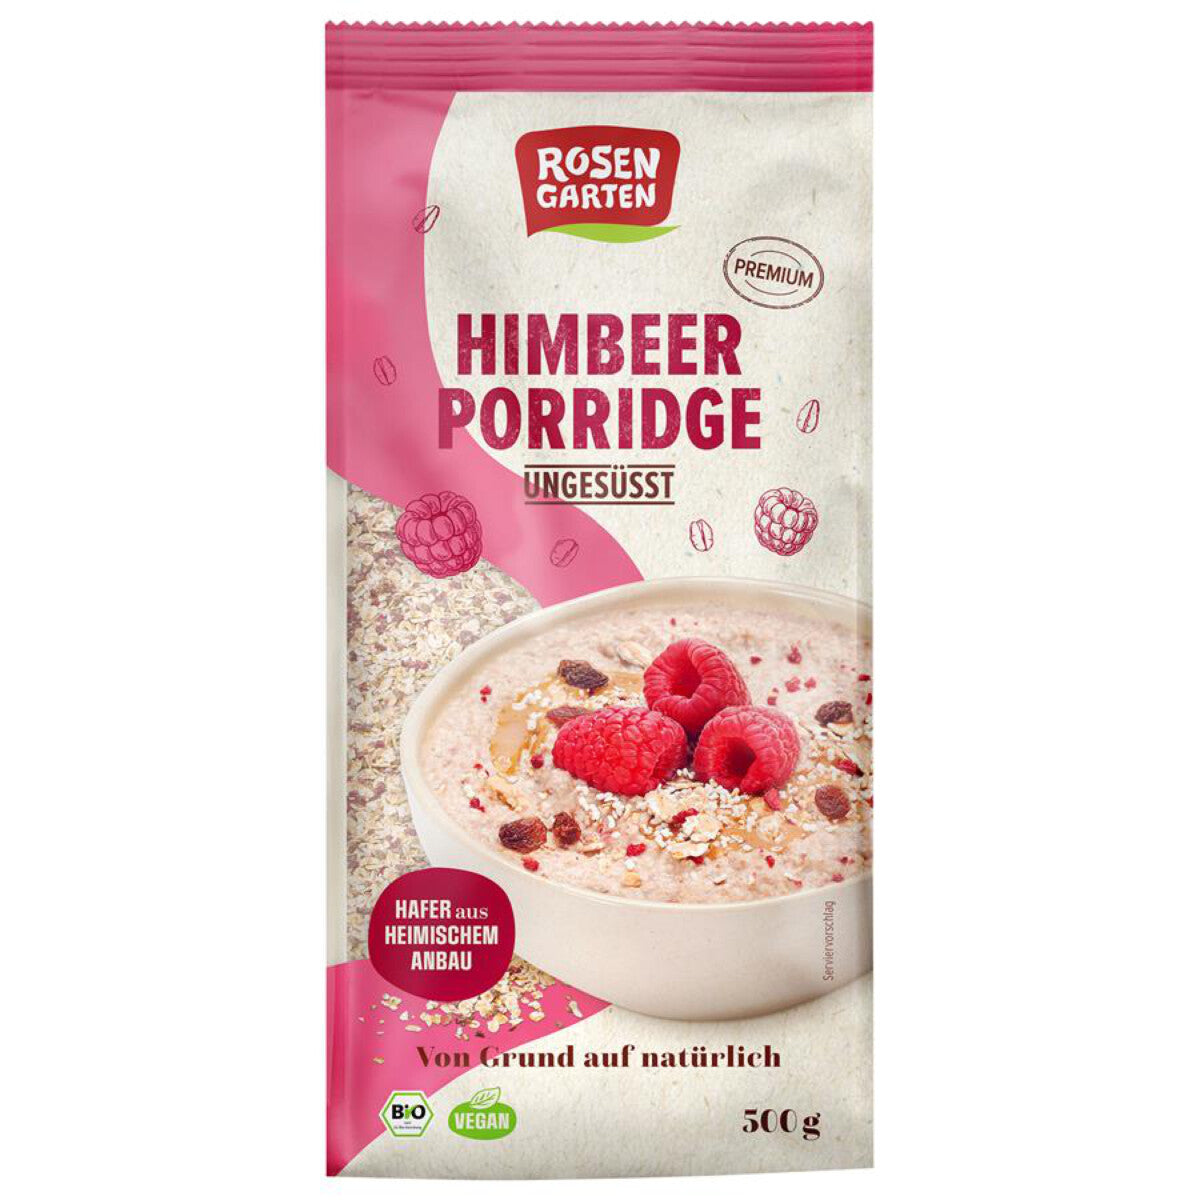 ROSENGARTEN Himbeer Porridge ungesüßt - 500 g